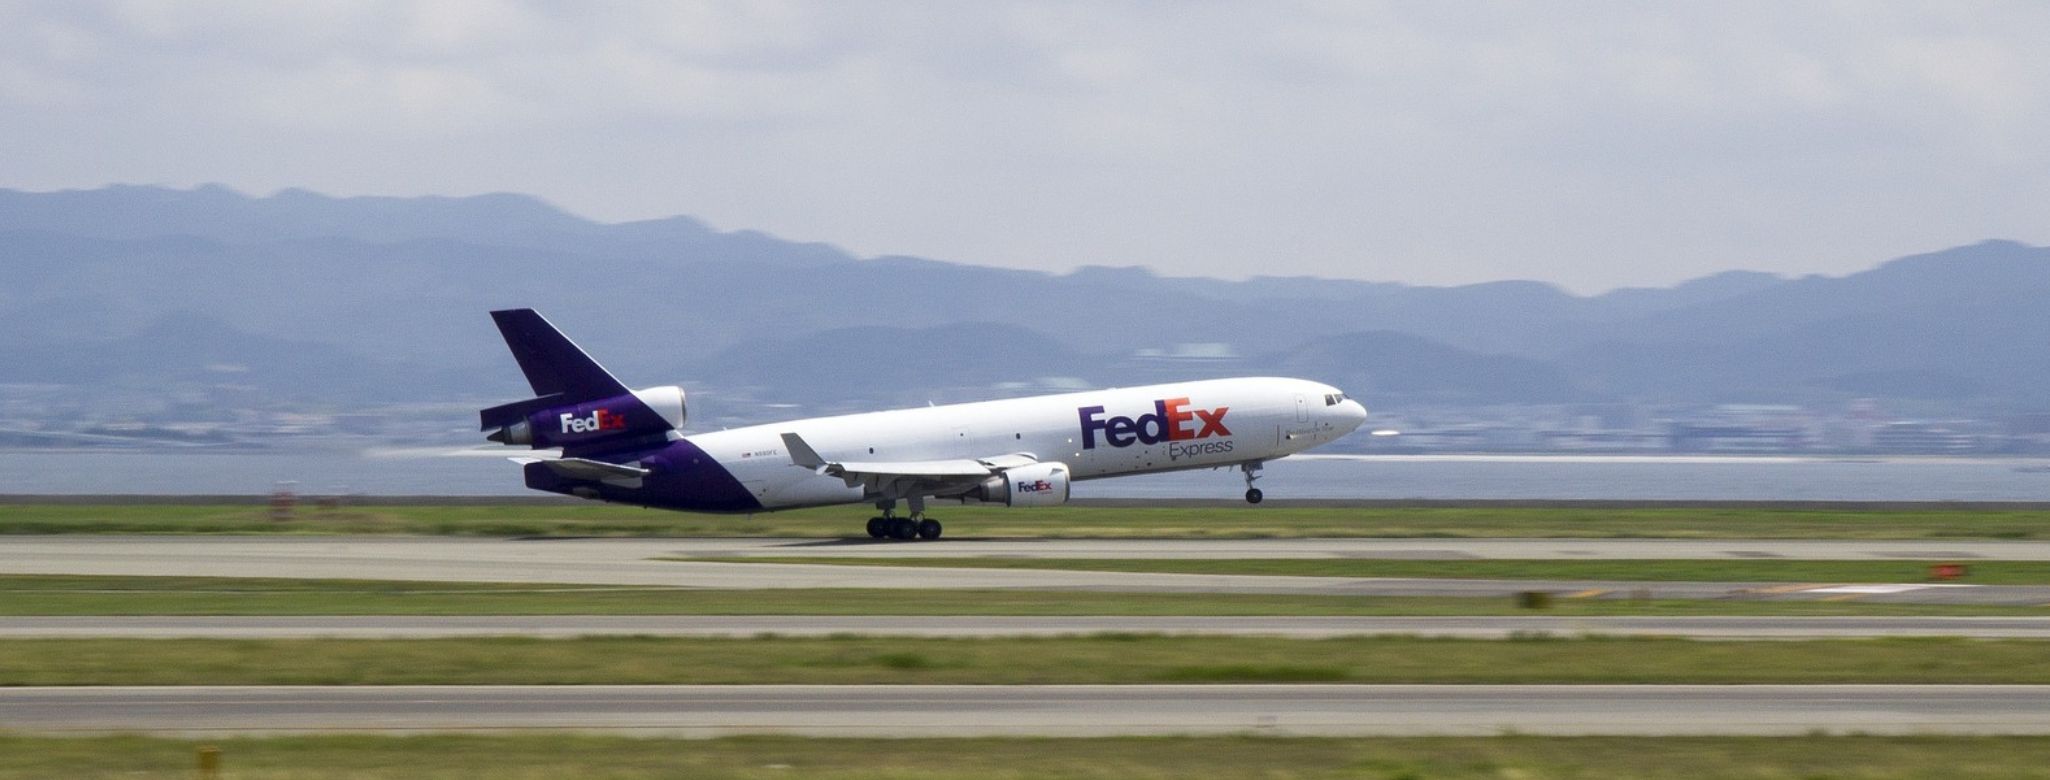 Avião da FedEx mostrando os envios internacionais da FedEx